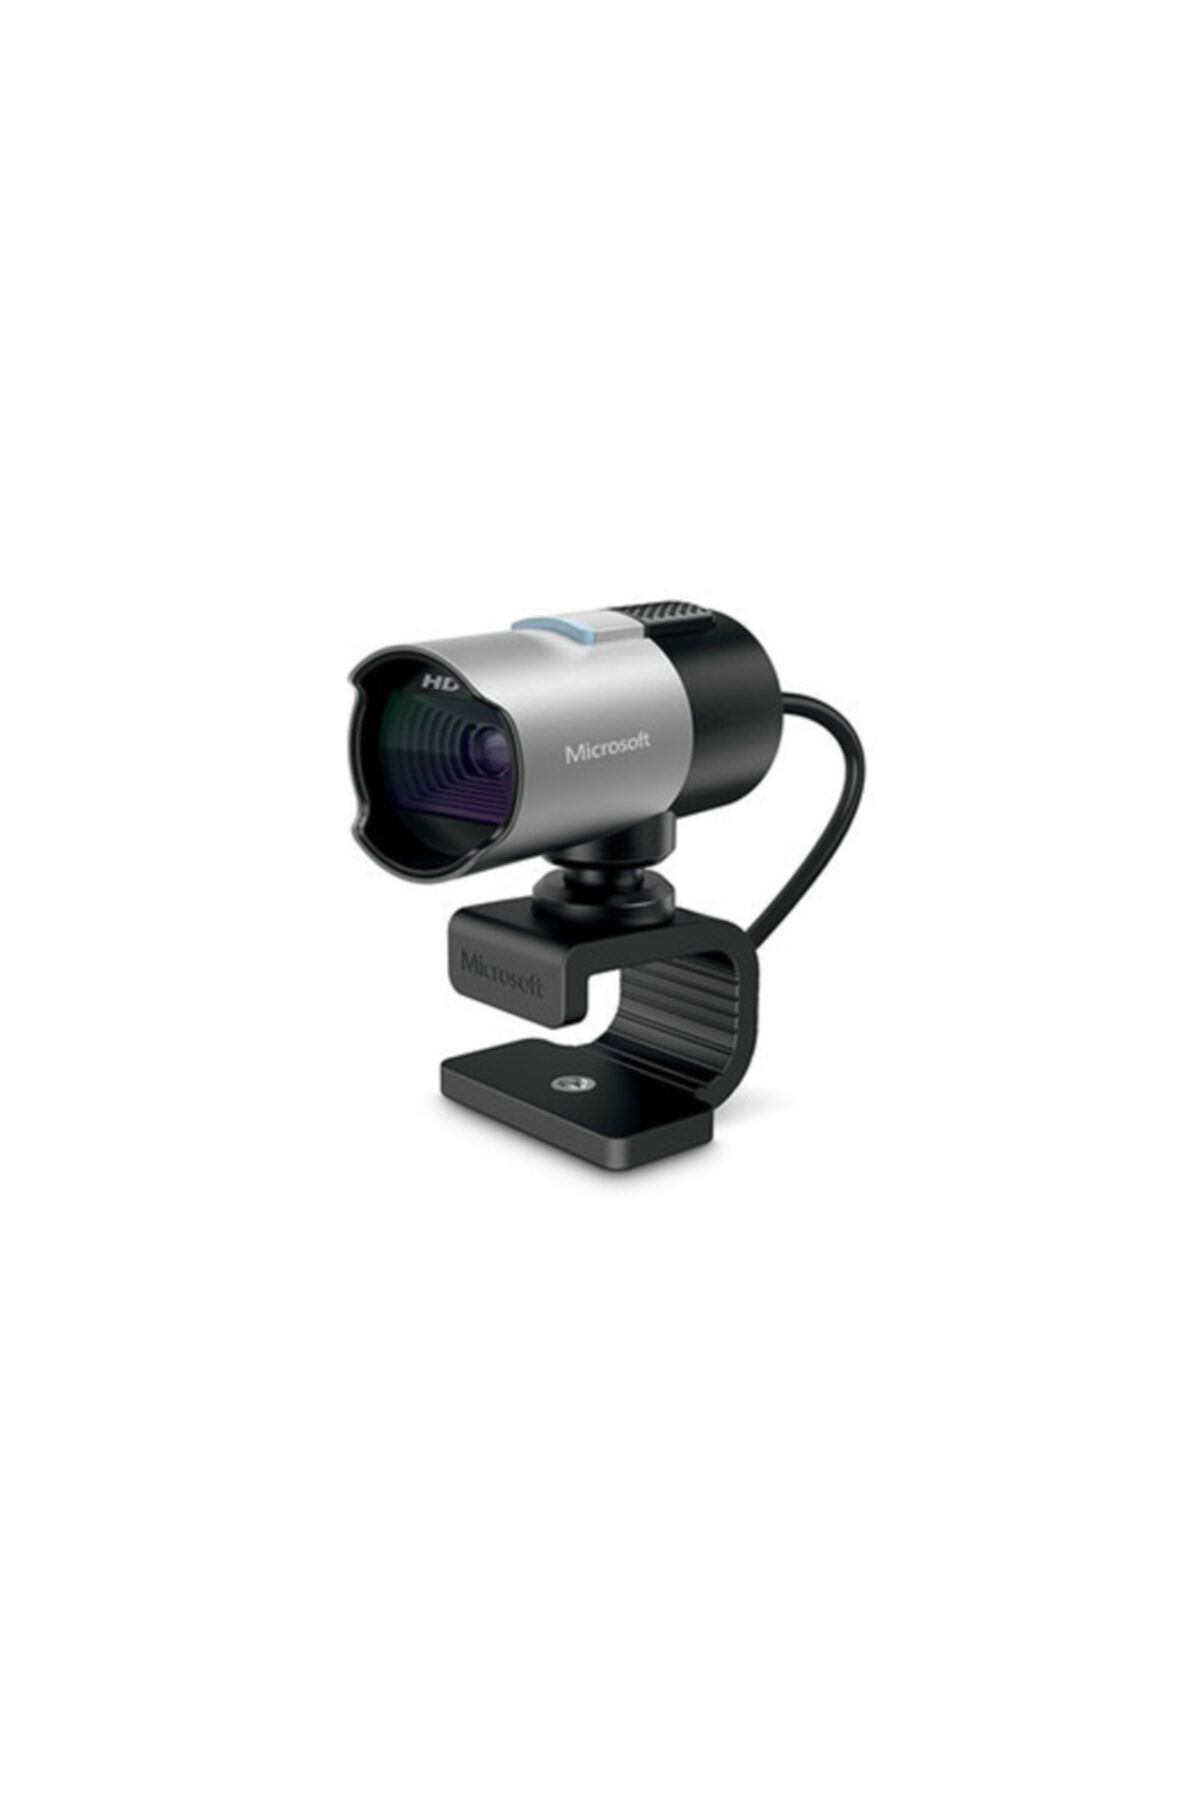 MICROSOFT Lifecam Studio For Business Webcam